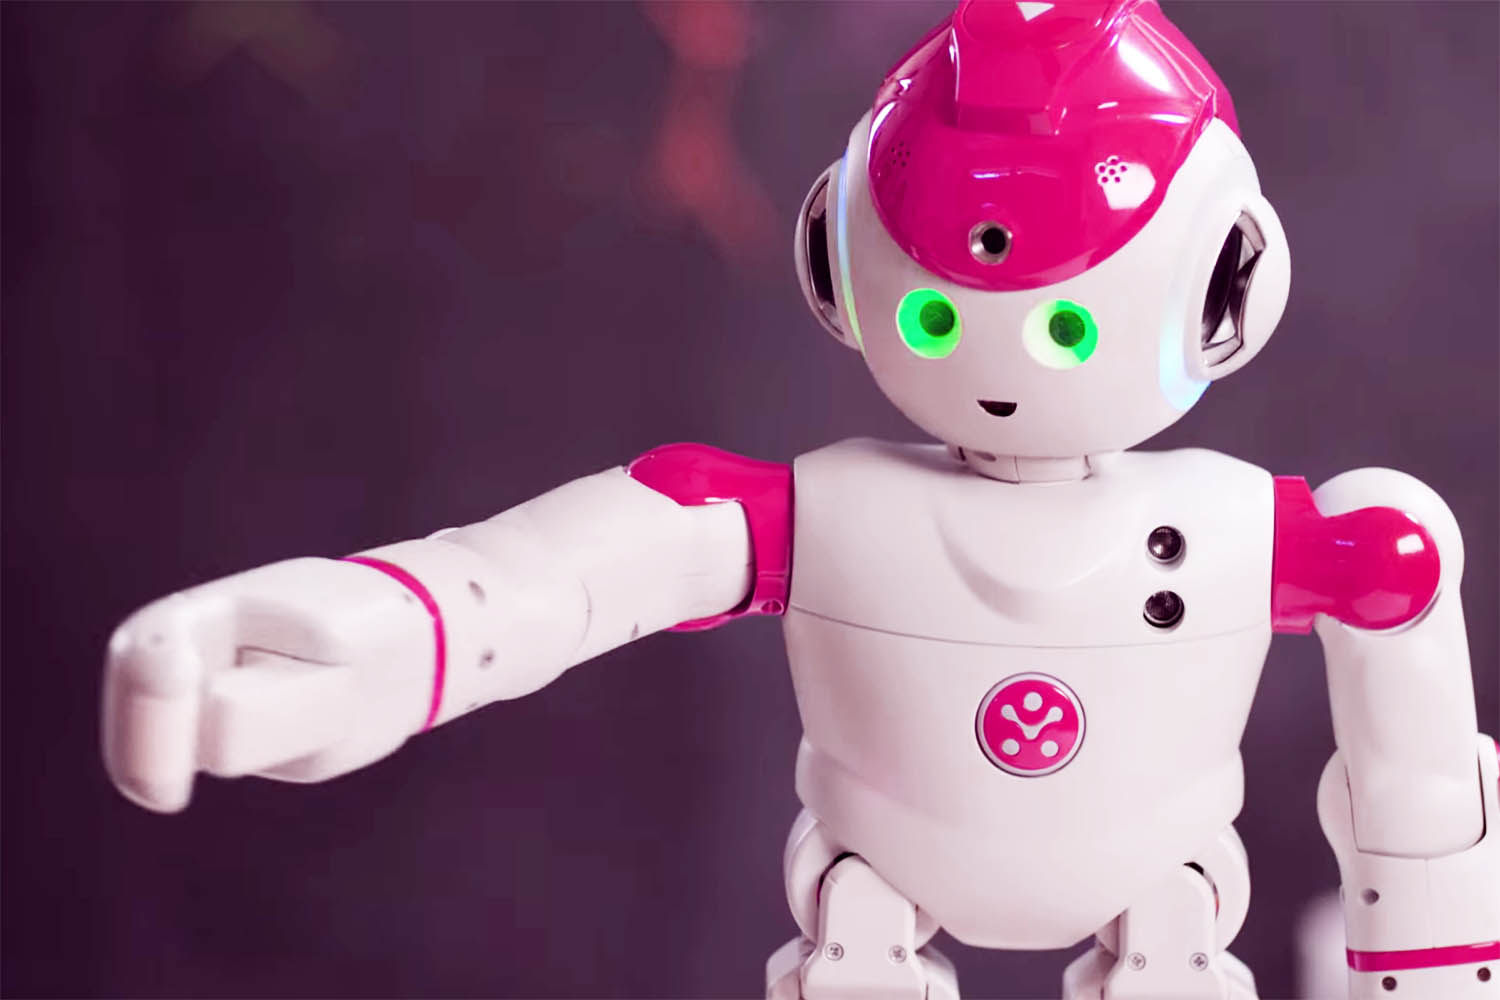 Meet the World's Smartest Robot, Alpha 2